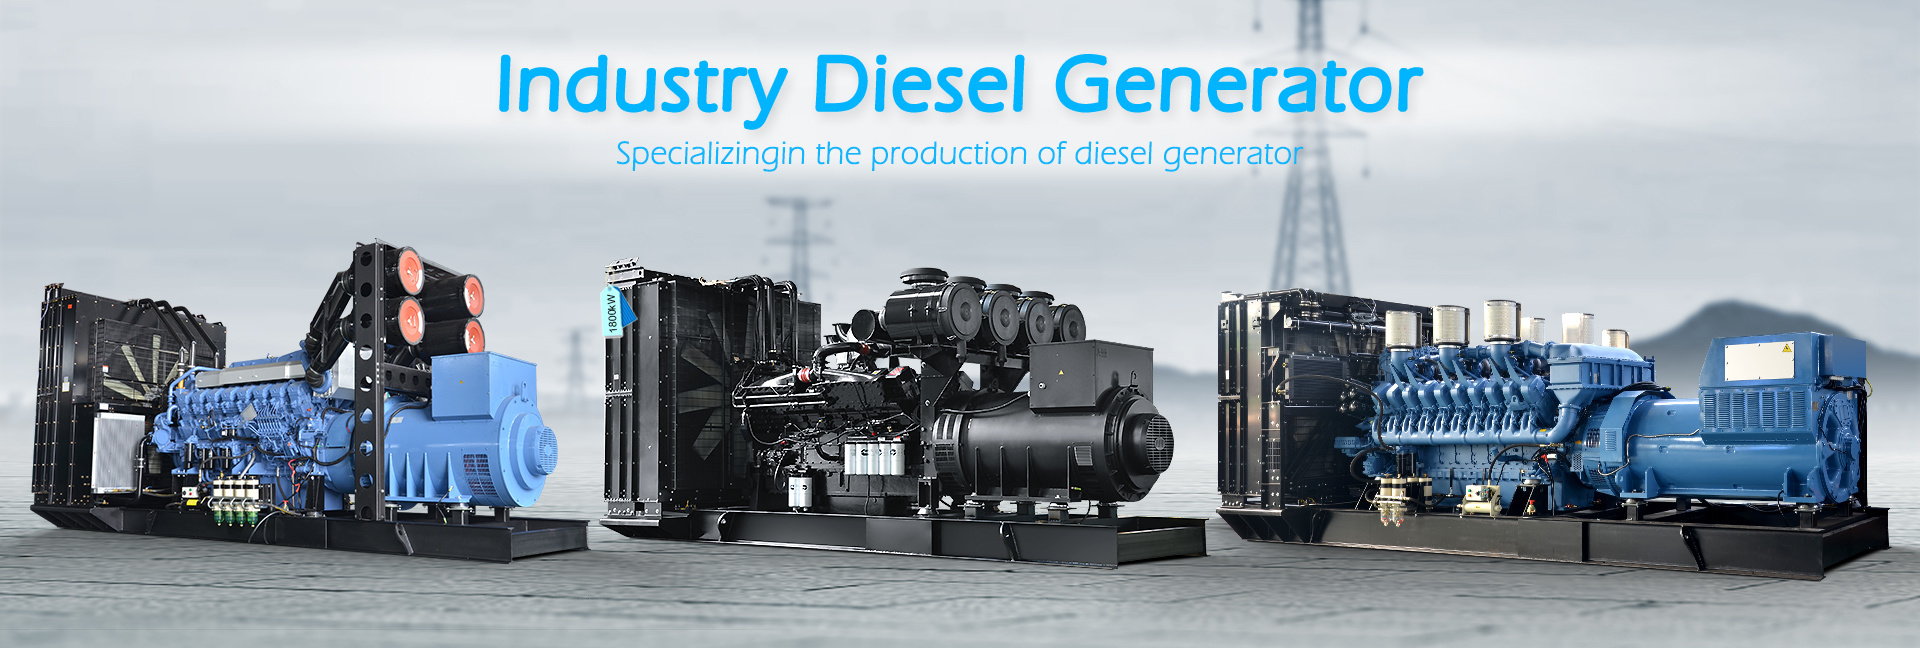 Industry Diesel Generator